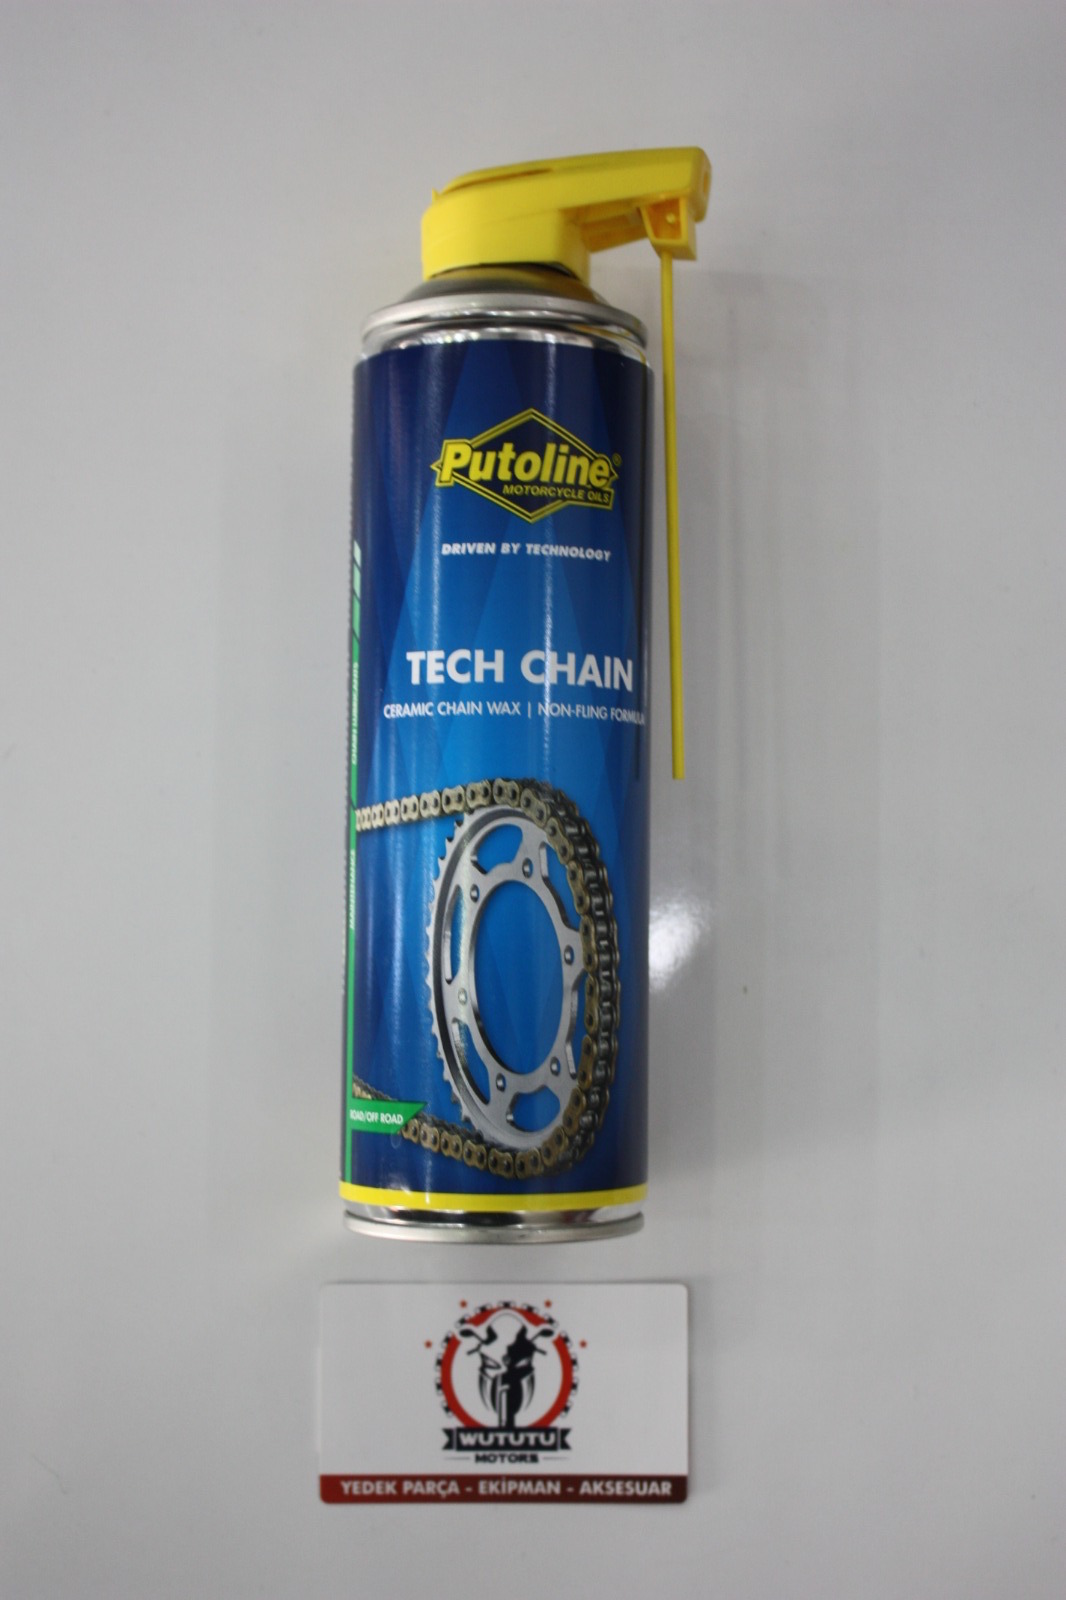 Putoline Tech Chain Seramik Zincir Yağı 500ml N11.1884